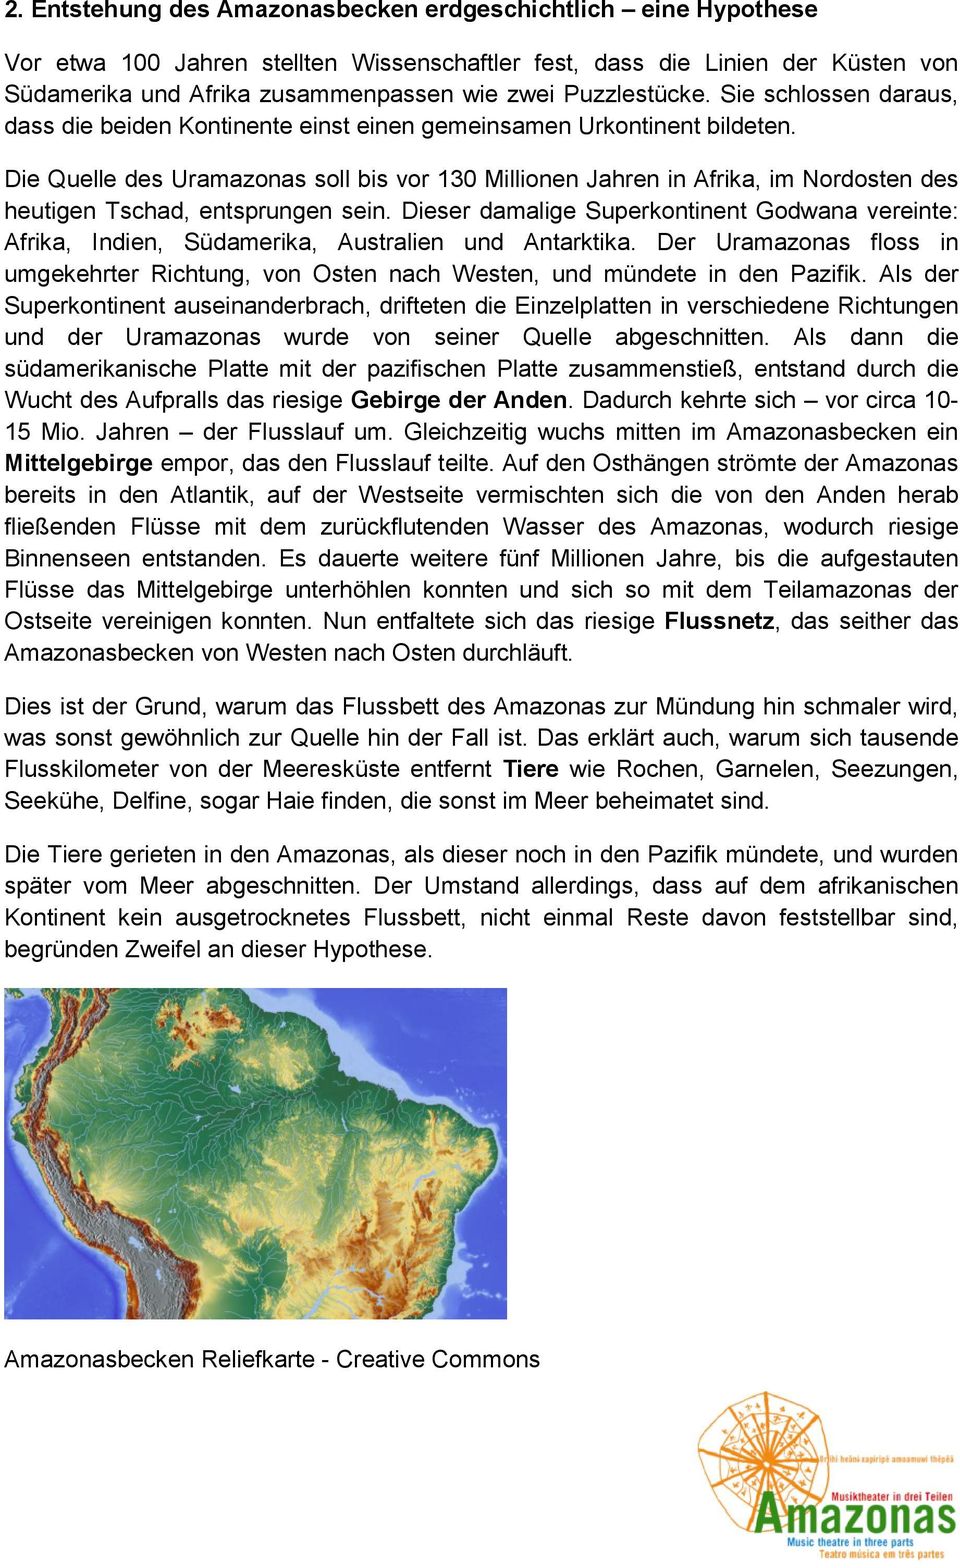 Die Quelle des Uramazonas soll bis vor 130 Millionen Jahren in Afrika, im Nordosten des heutigen Tschad, entsprungen sein.